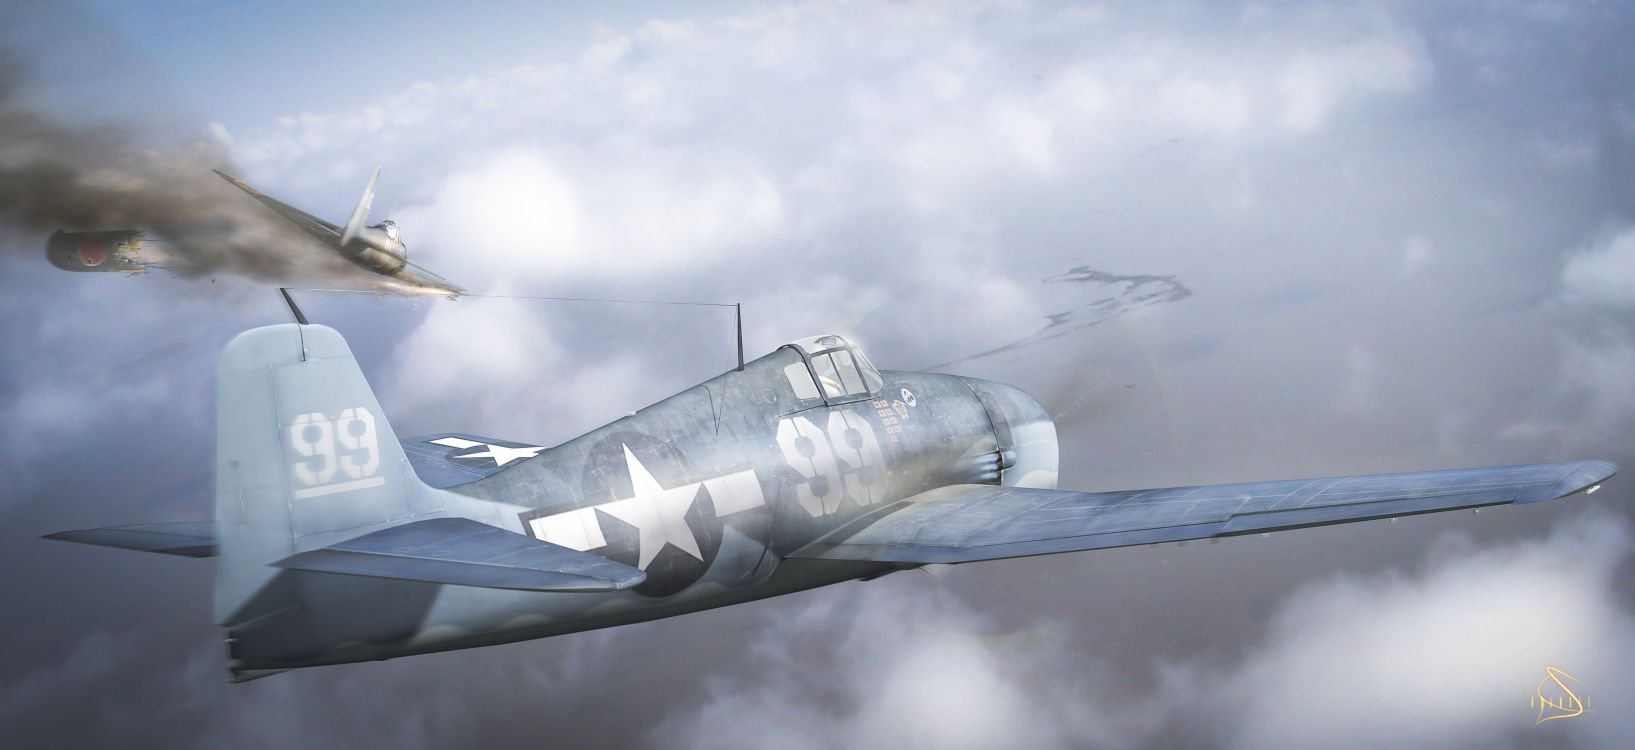 第二次世界大战, 航空, 航班, 军用飞机, 空军 壁纸 4797x2200 允许